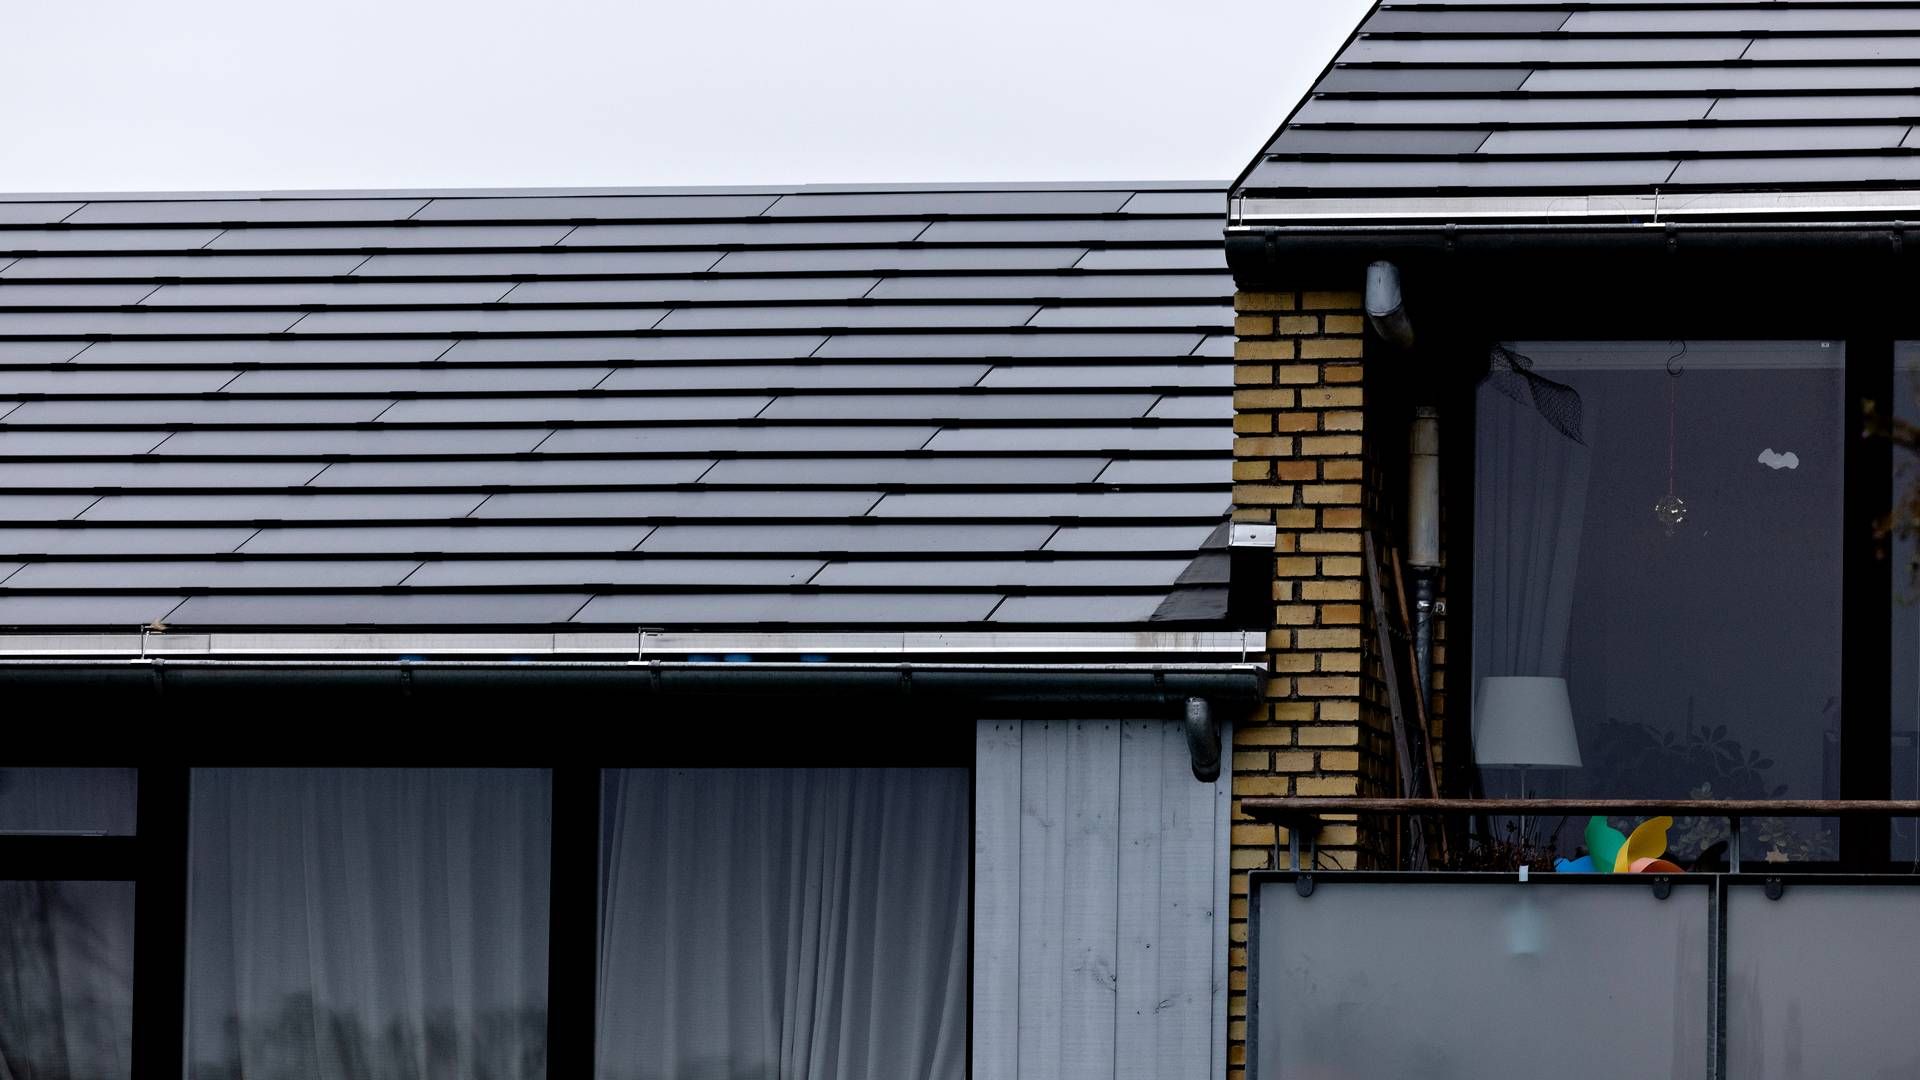 Problemerne i forhold til at etablere solceller på bygningers tage er velkendte og har ikke brug for mere ventetid, lyder det fra politikere, kommuner og industri. | Foto: Jacob Ehrbahn